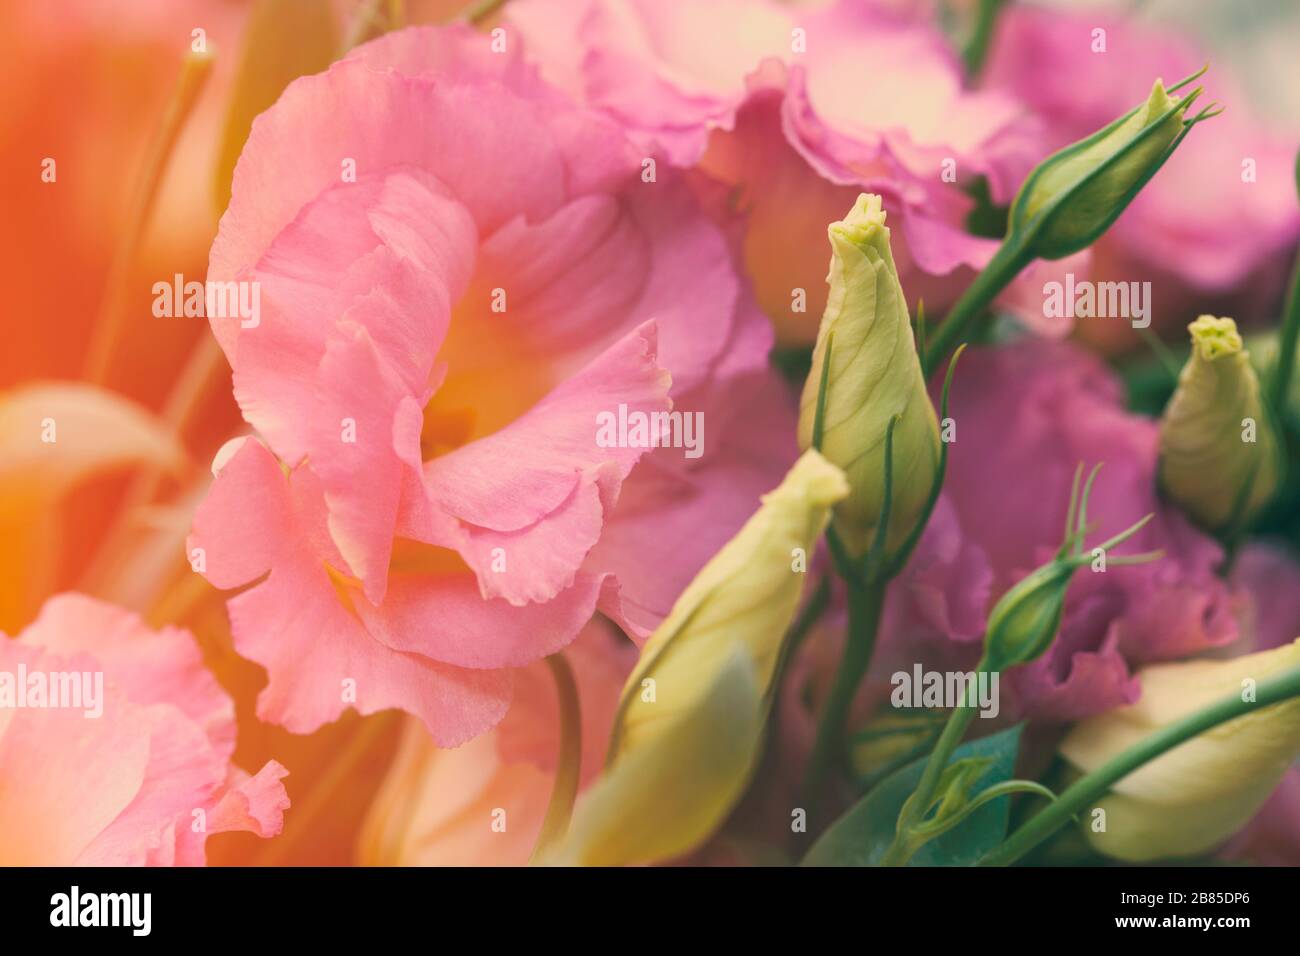 Pink beautiful eustoma flowers. Lisianthus, tulip gentian, eustomas. Background.  Vintage style. Stock Photo